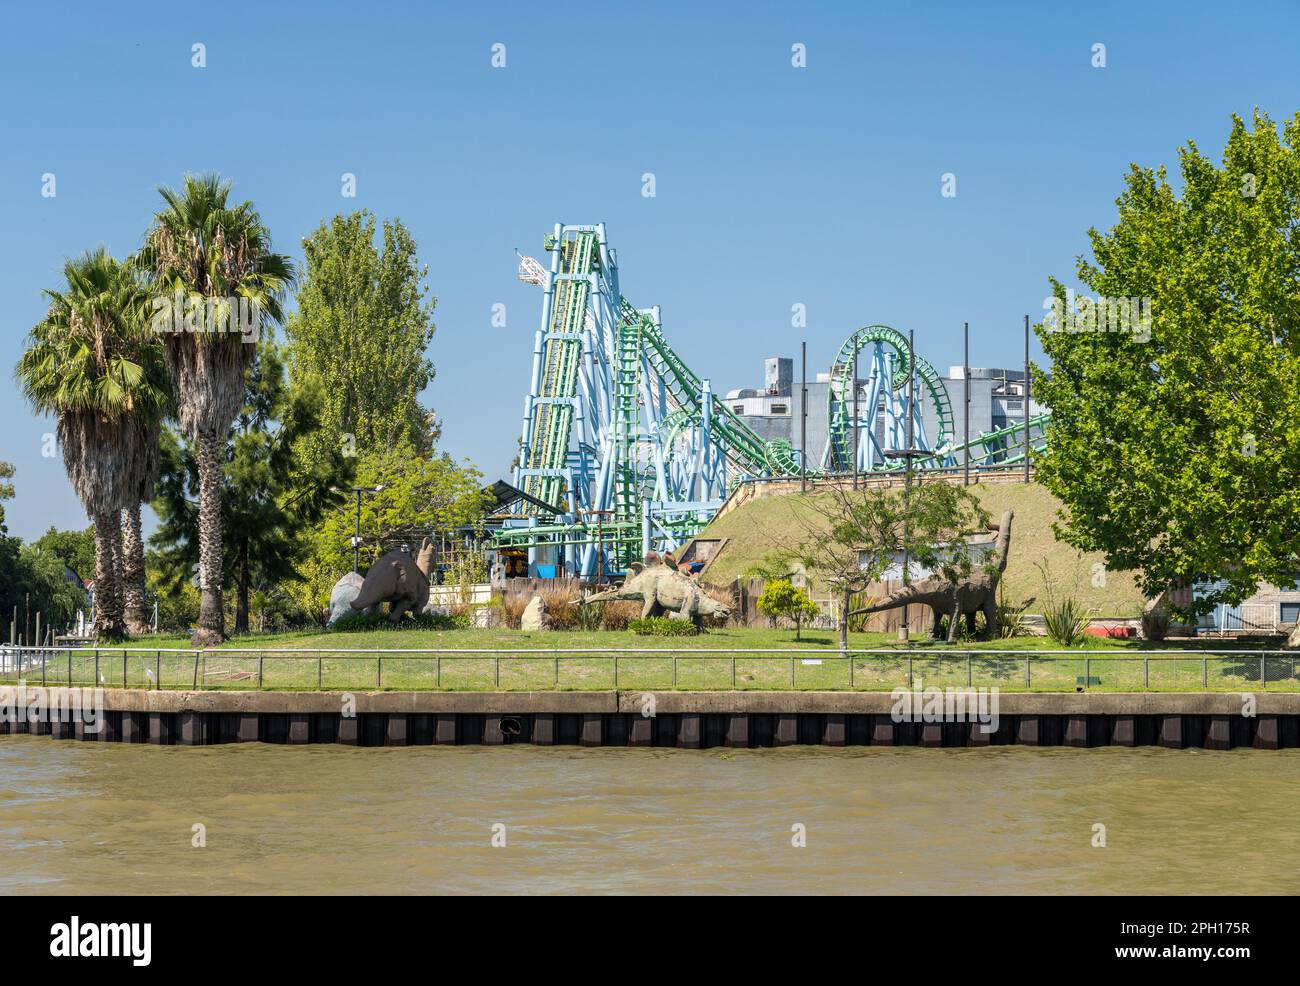 Roller coaster in the Parque de la Costa funfair and theme park in Tigre Argentina on Parana delta Stock Photo